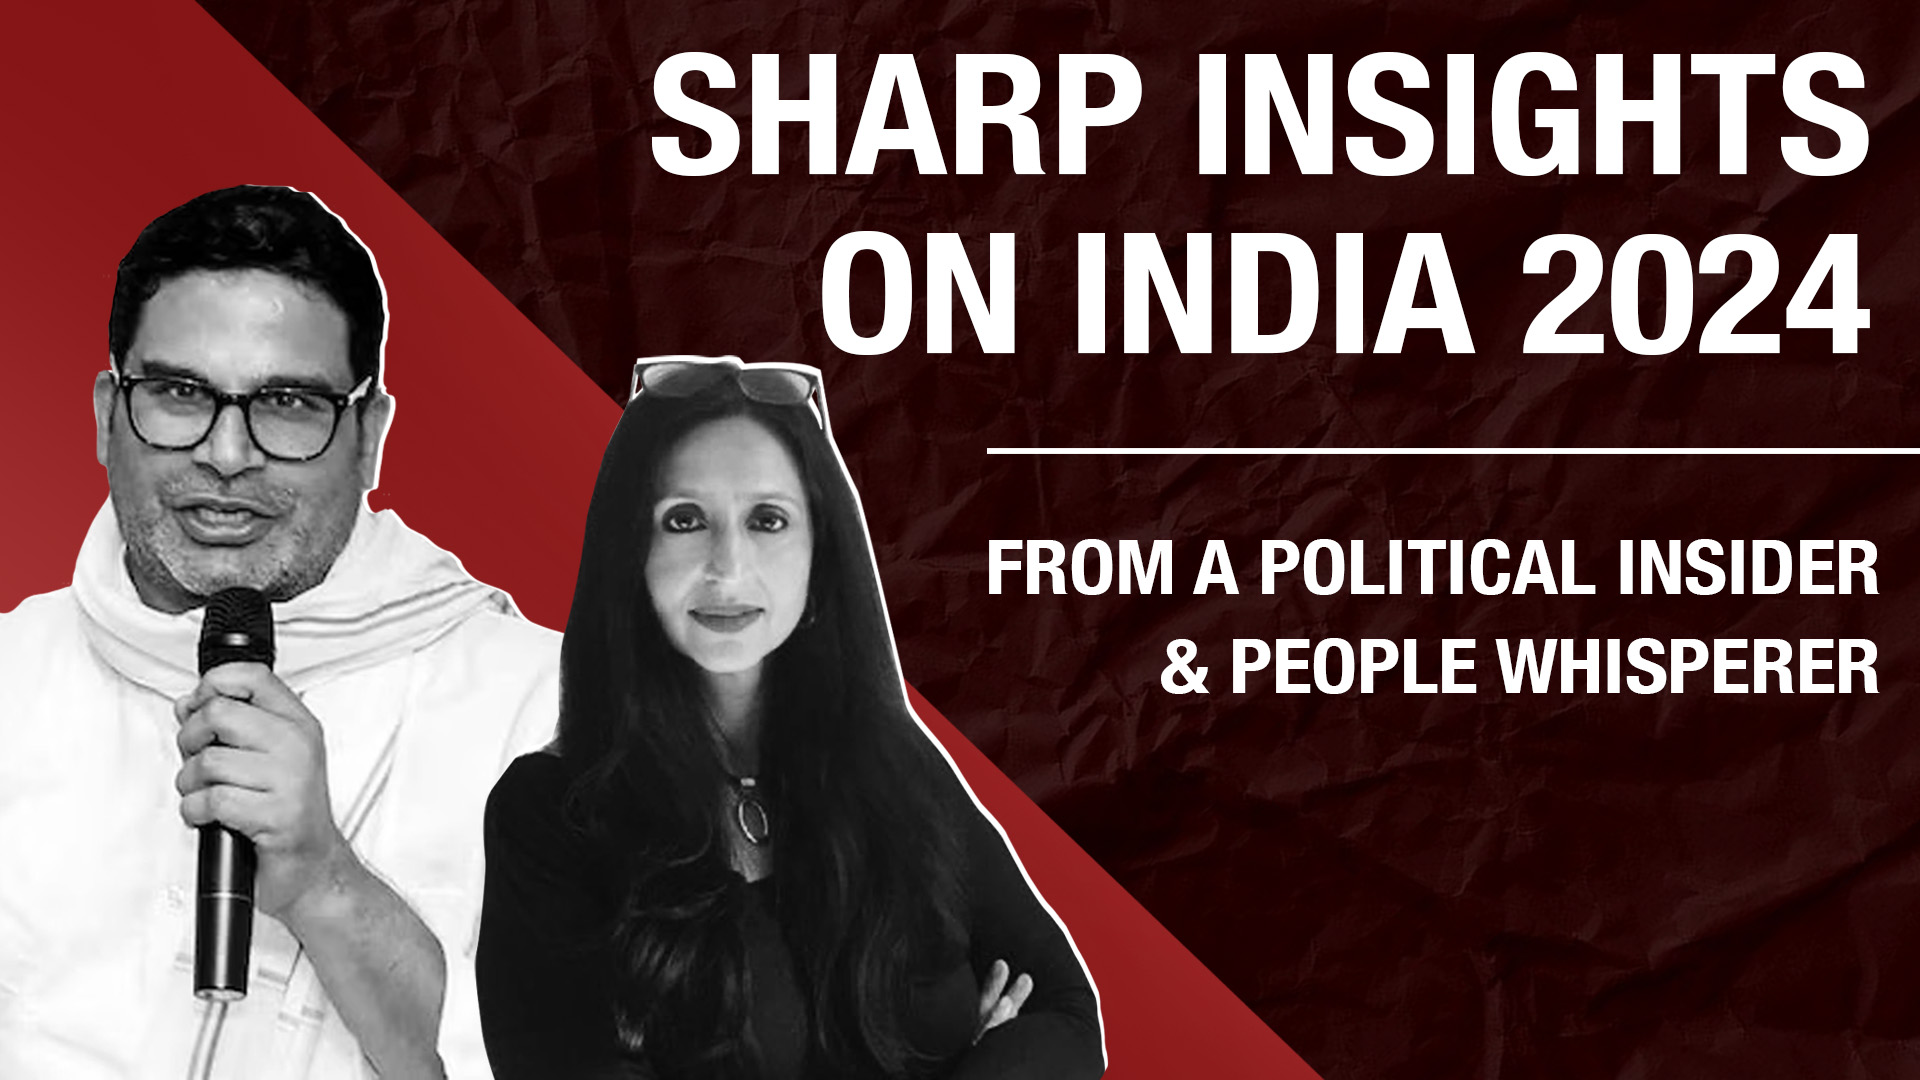 Political savant Prashant Kishor shares sharp insights on India 2024